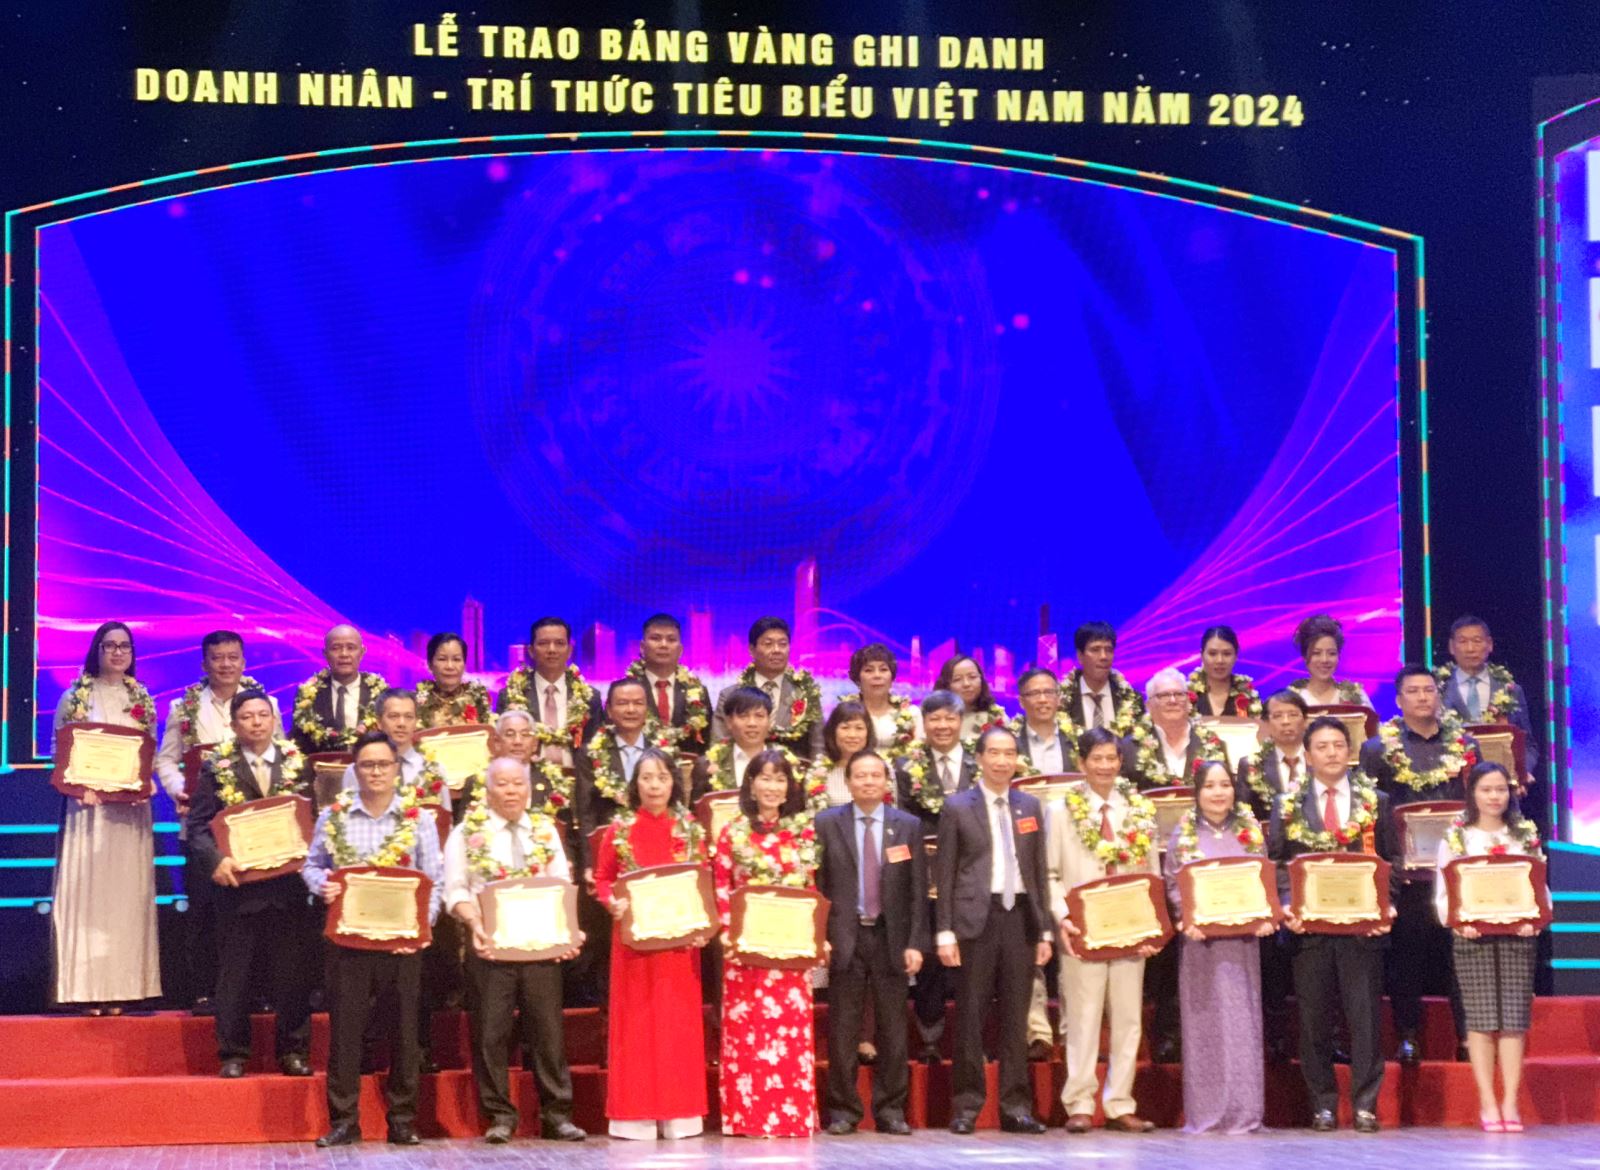 Các cá nhân nhận giải thưởng Trí thức tiêu biểu Việt Nam dành chụp ảnh lưu niệm cùng Ban tổ chức